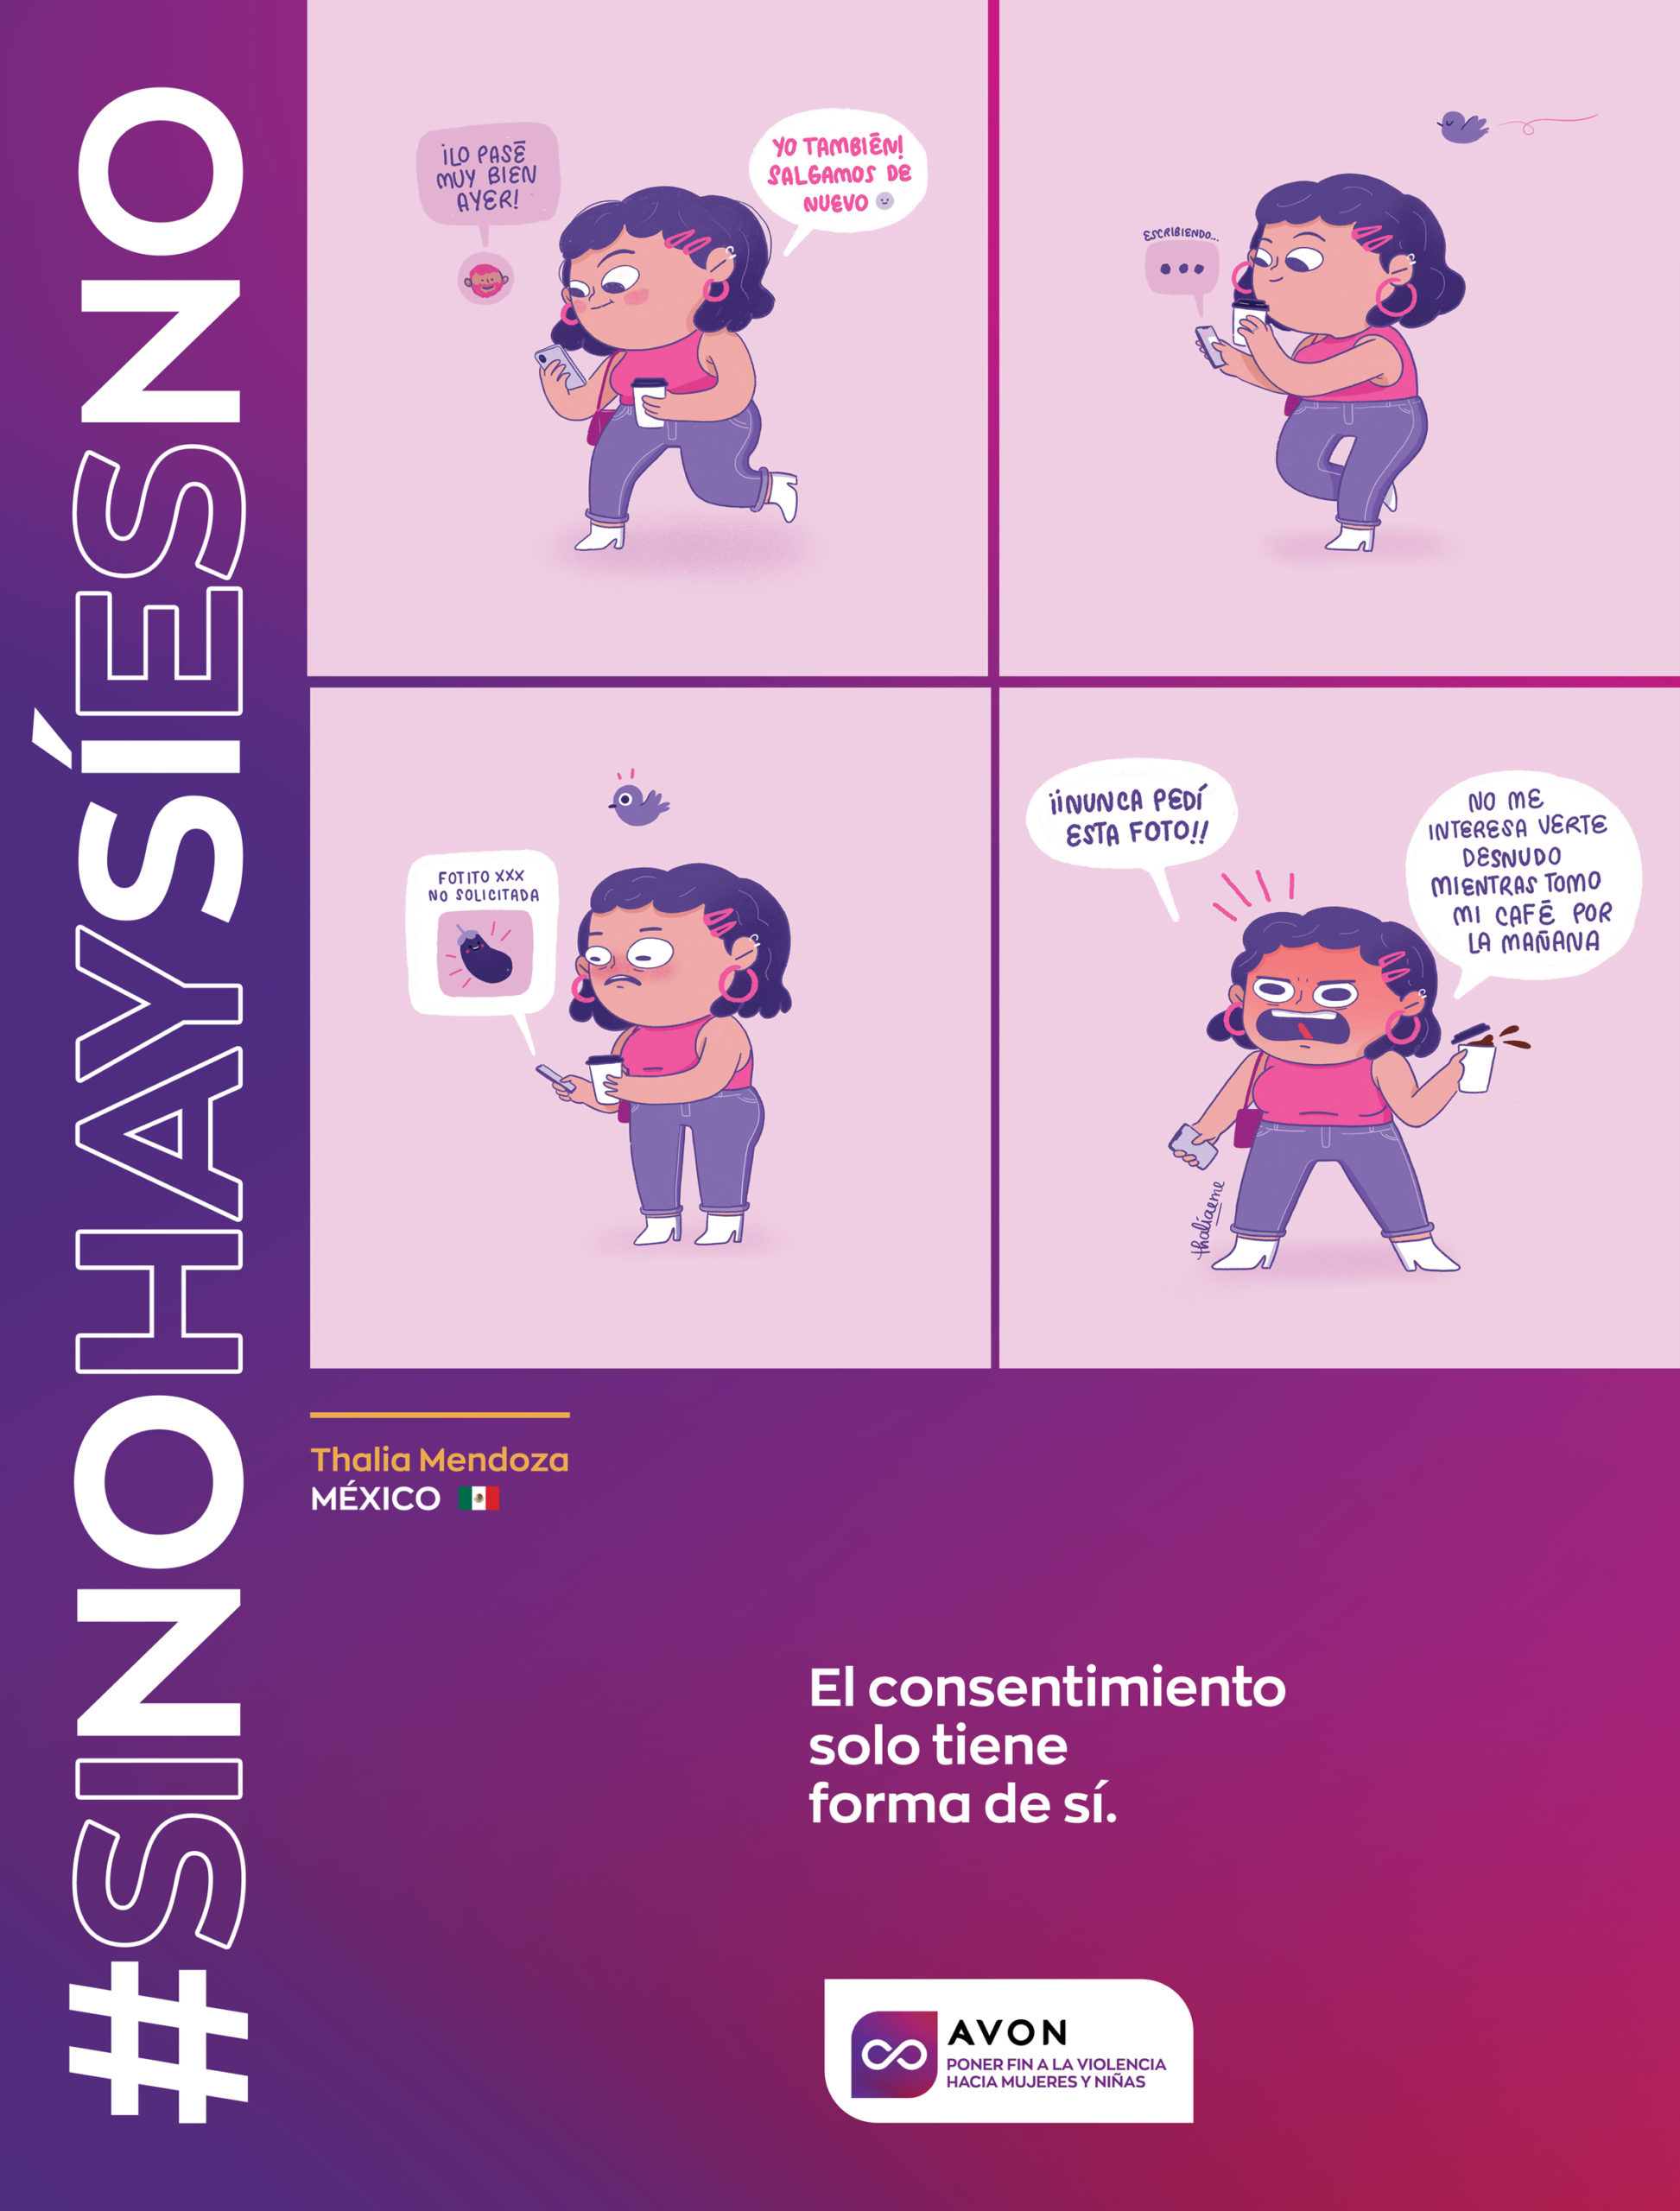 Sin consentimiento es violencia #siNohaySíesNo - Style by ShockVisual